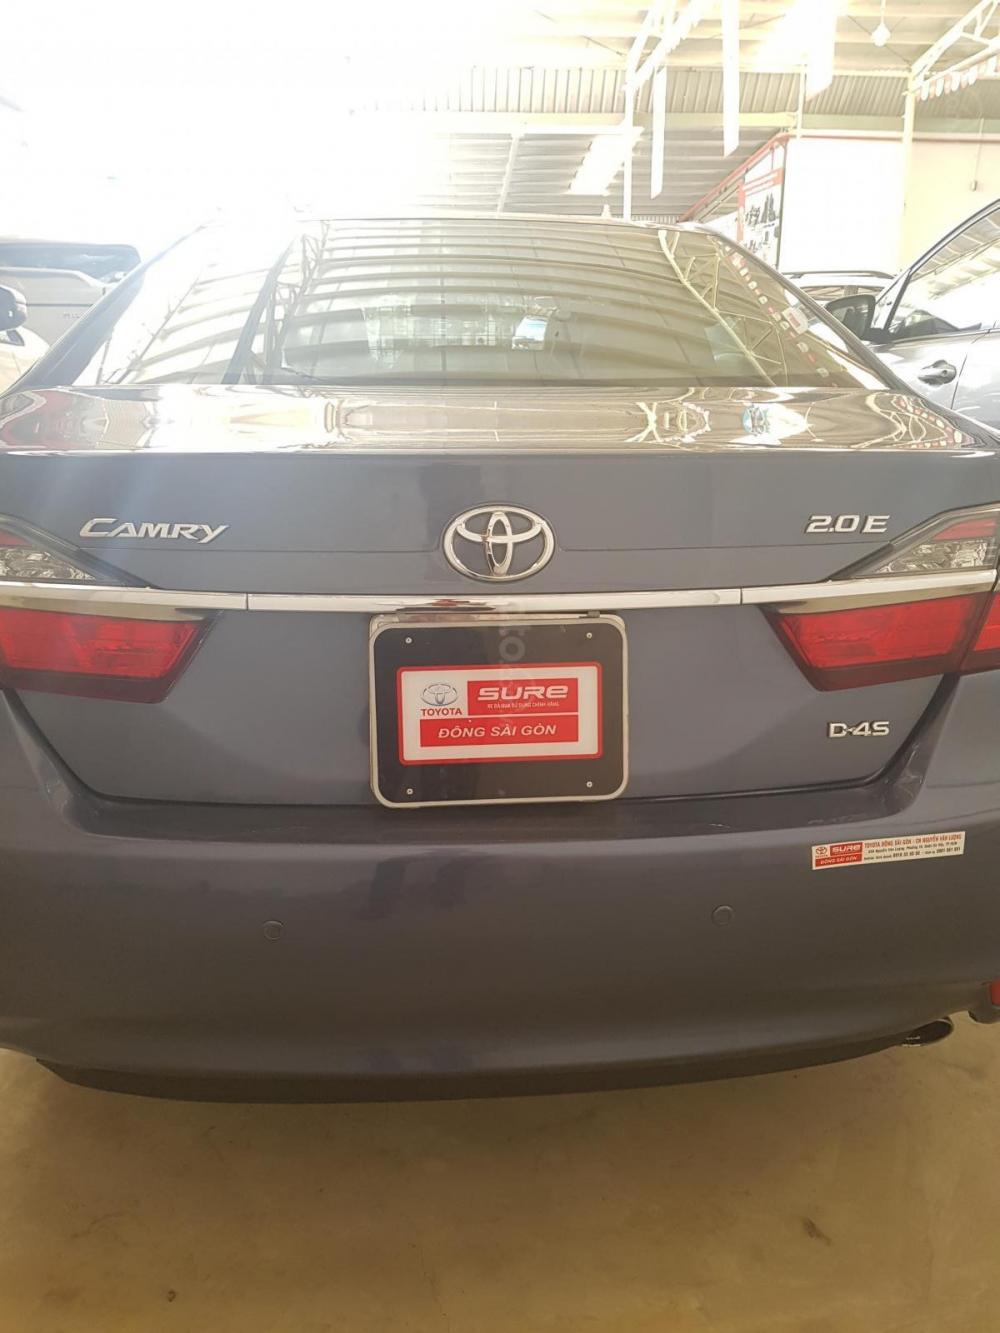 Toyota Camry E 2015 - Bán Camry E, 2015, xanh lam, 889TR, (còn thương lượng), có vay, liên hệ Trung 036 686 7378 để được hỗ trợ giá tốt ạ